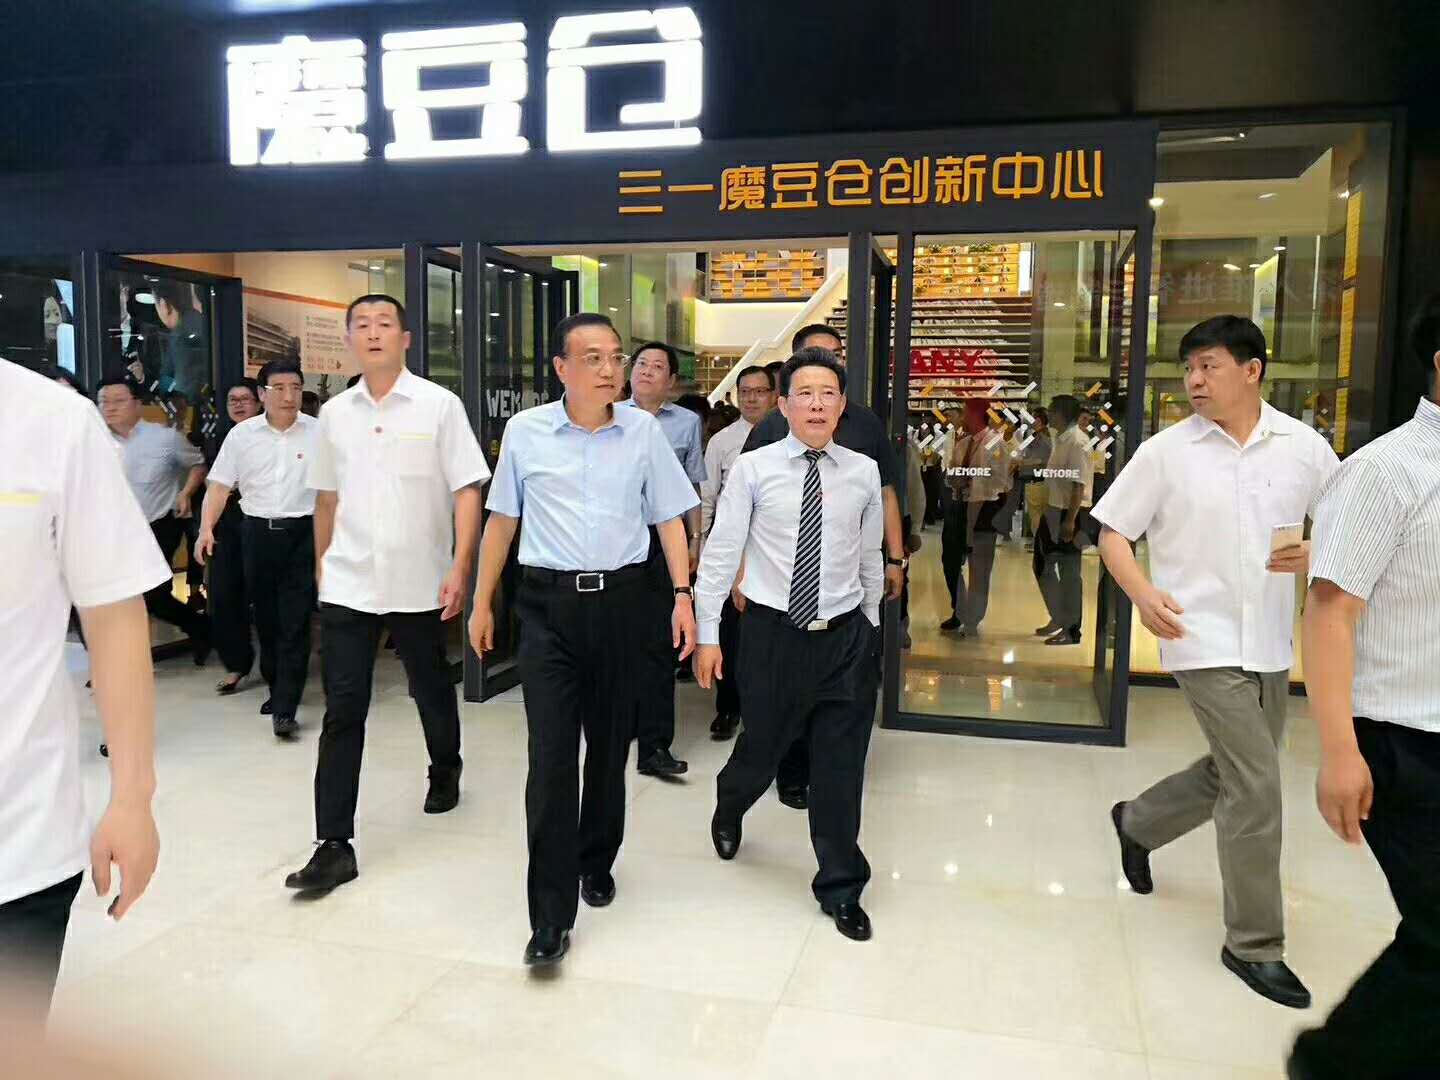 Accueillons chaleureusement le Premier ministre-M. La visite de Keqiang Lee à l'immeuble de bureaux CSCERAMIC.